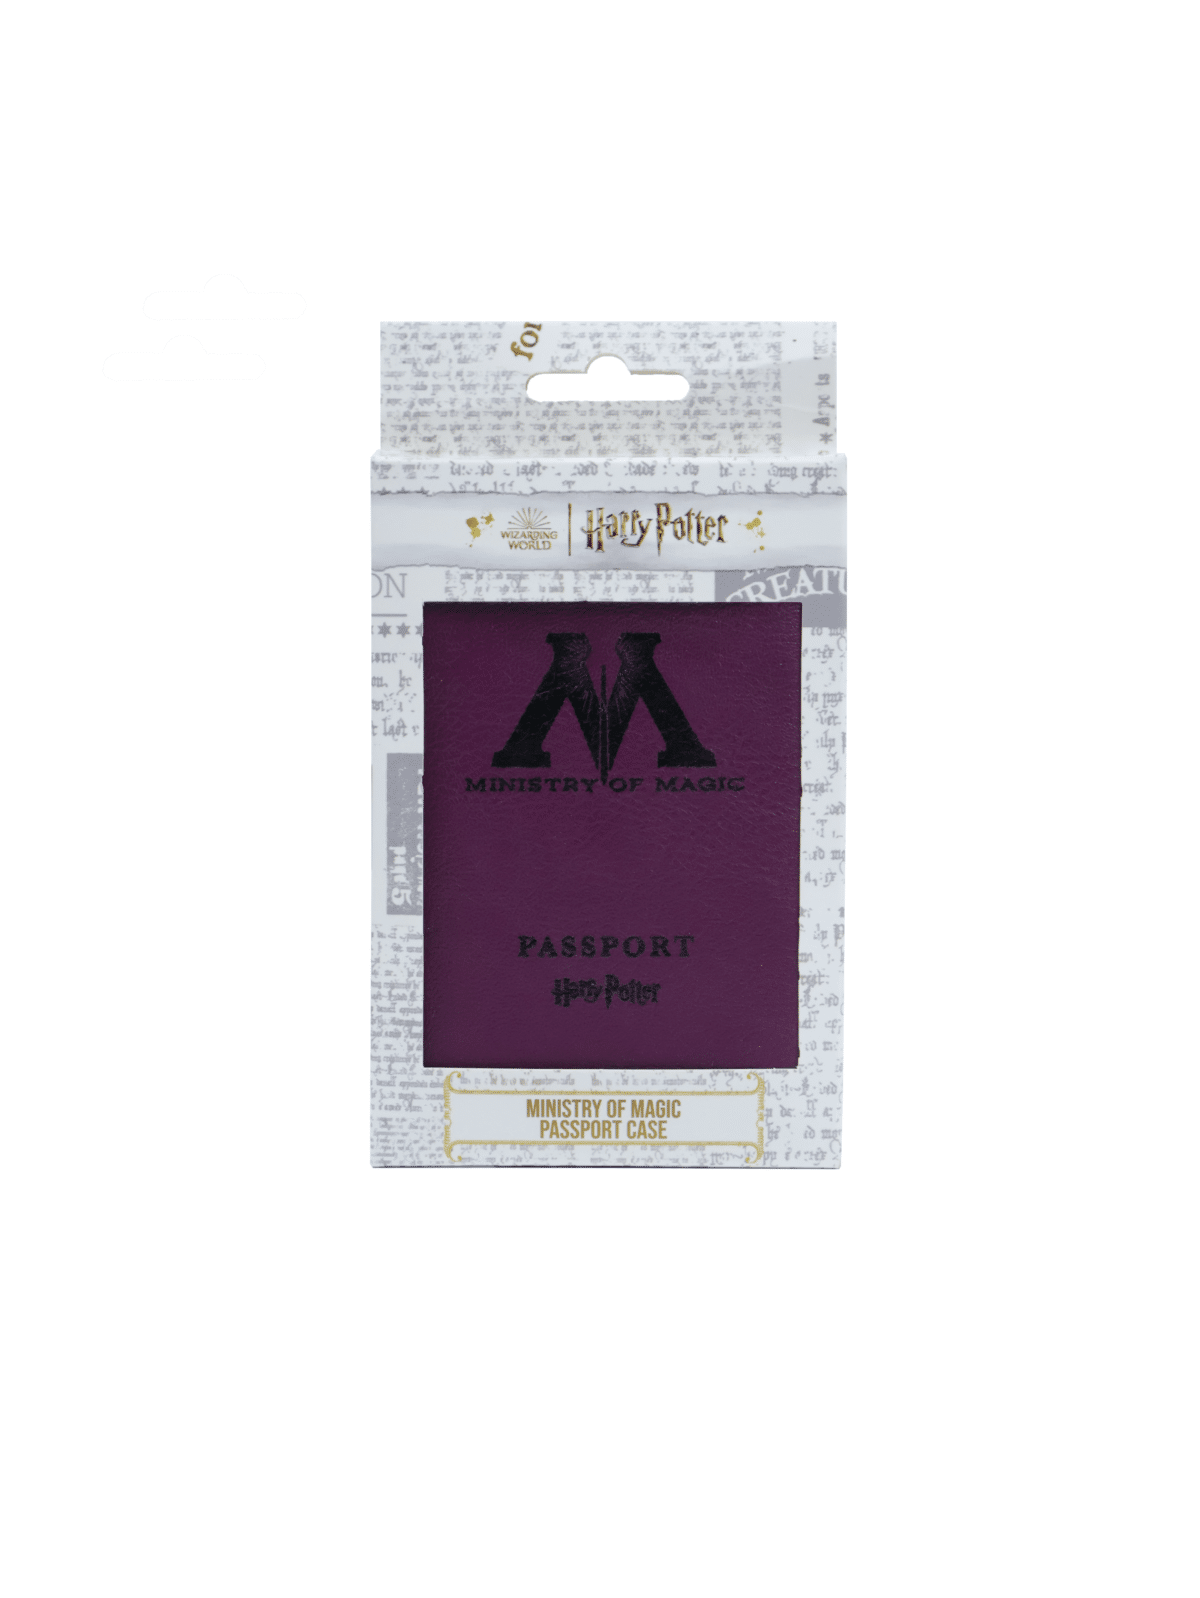 MoM pass kutu on Sihir Dükkanı - Tüm Harry Potter Ürünleri